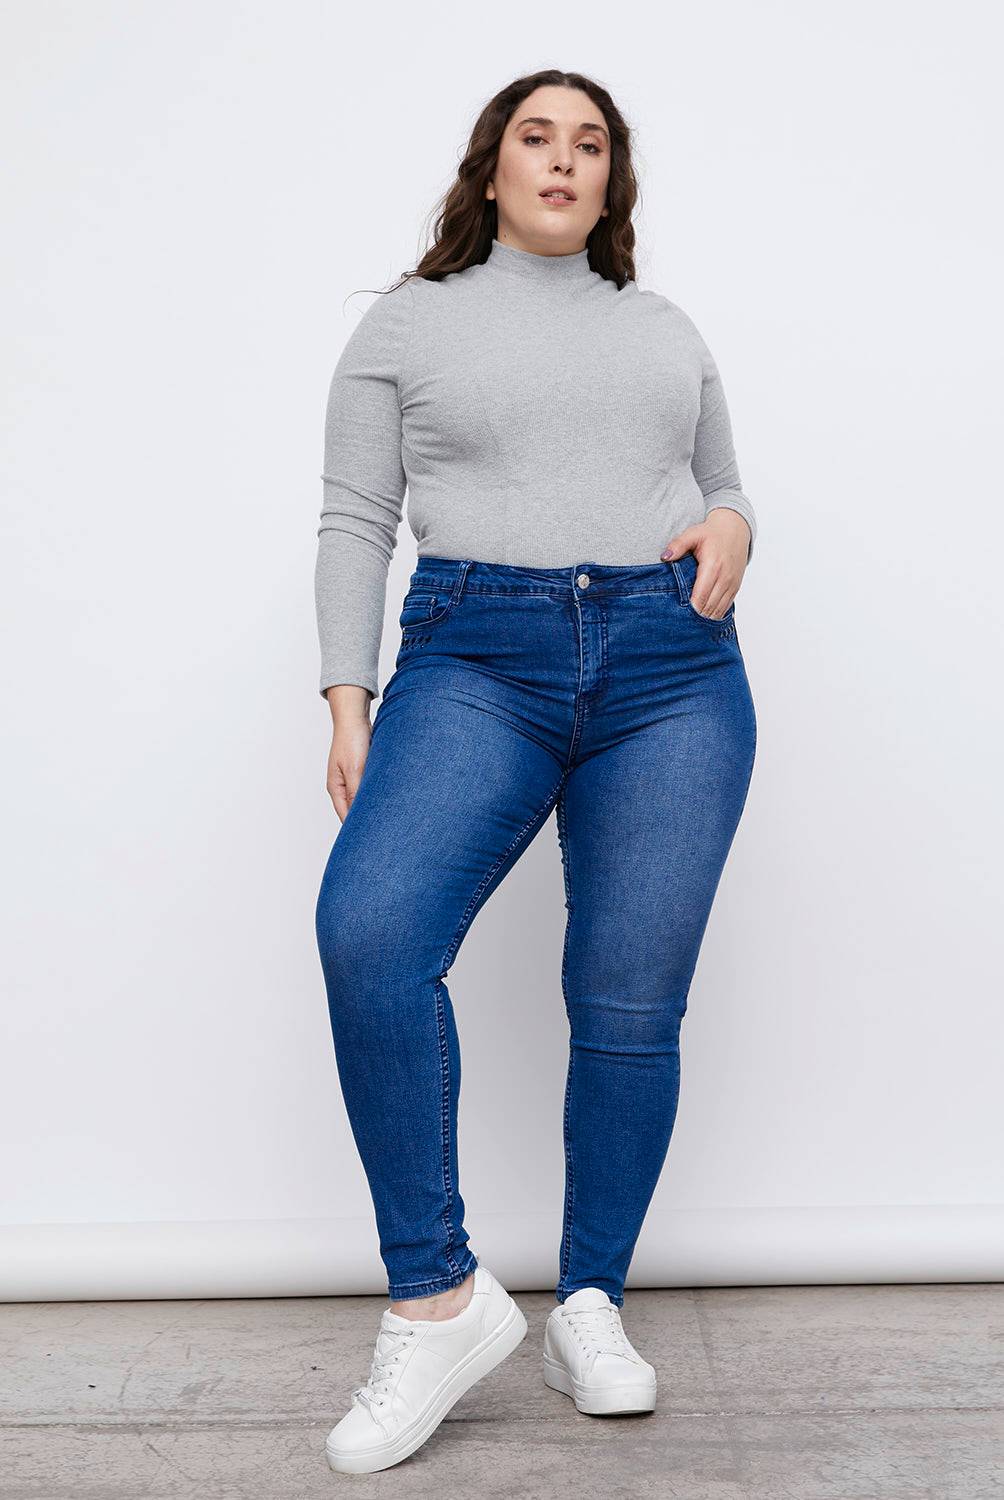 S. COCCI - Jeans Skinny Tiro Medio Mujer S. Cocci